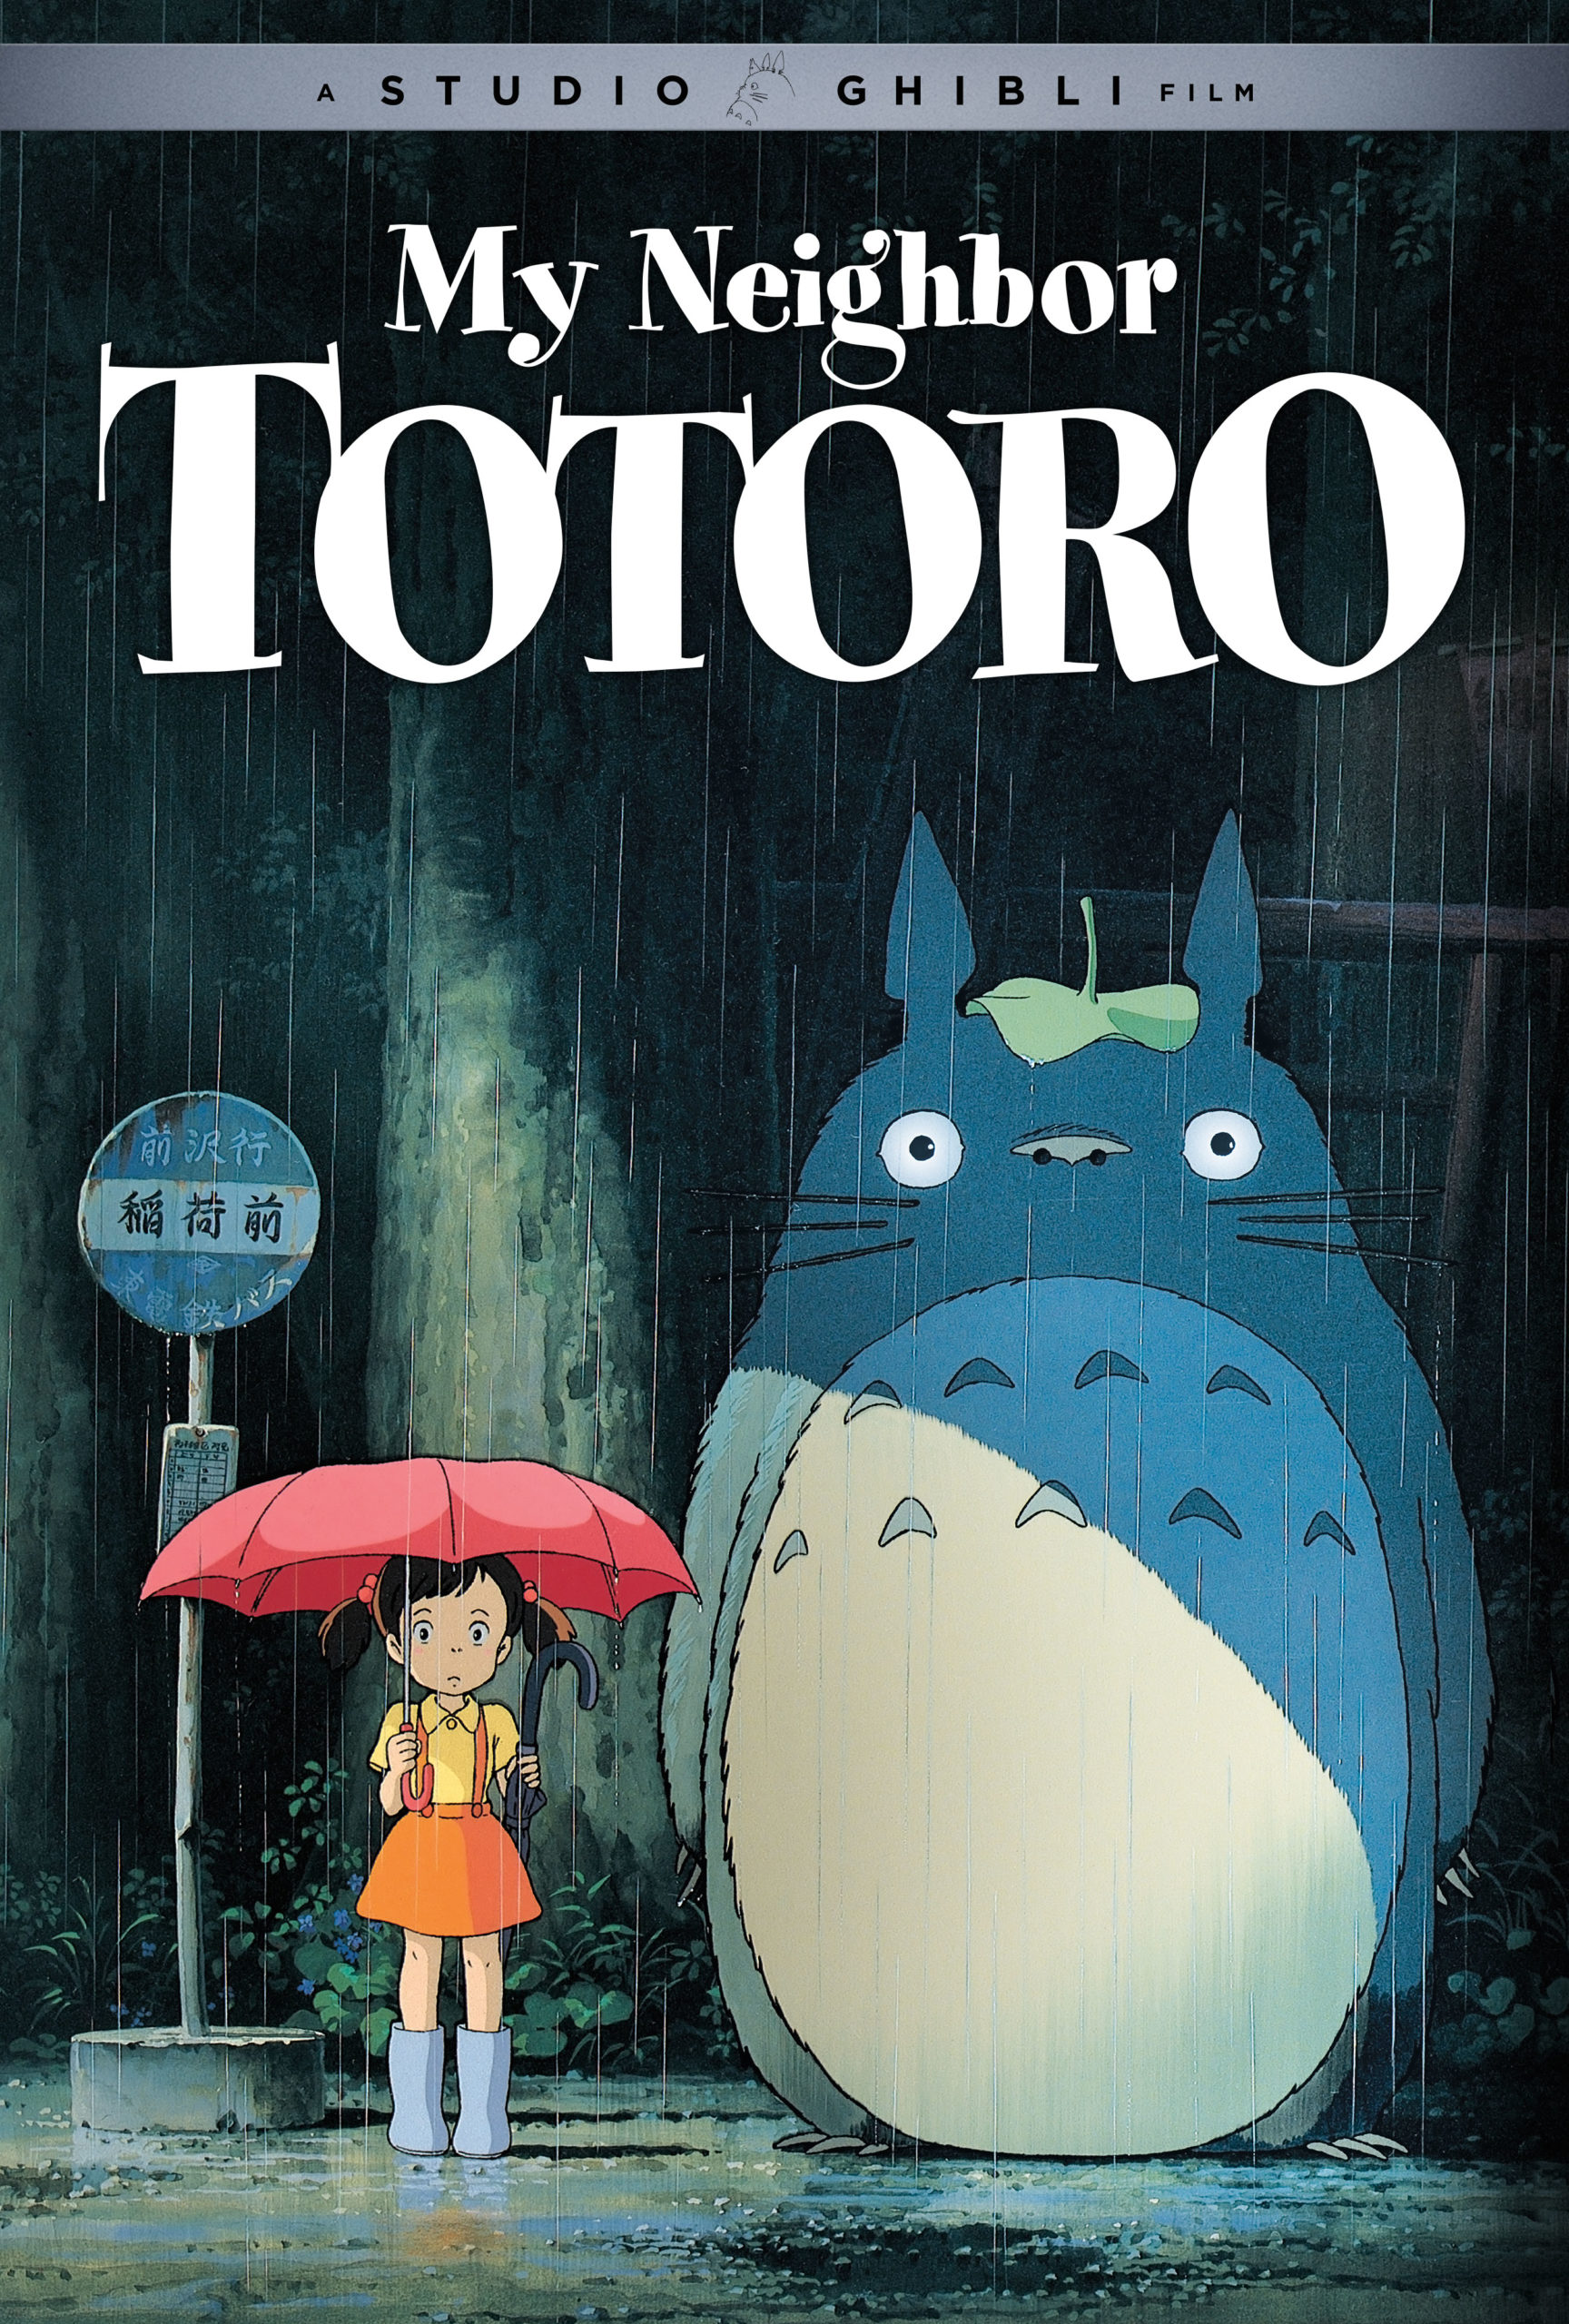 Image: © 1988 Studio Ghibli